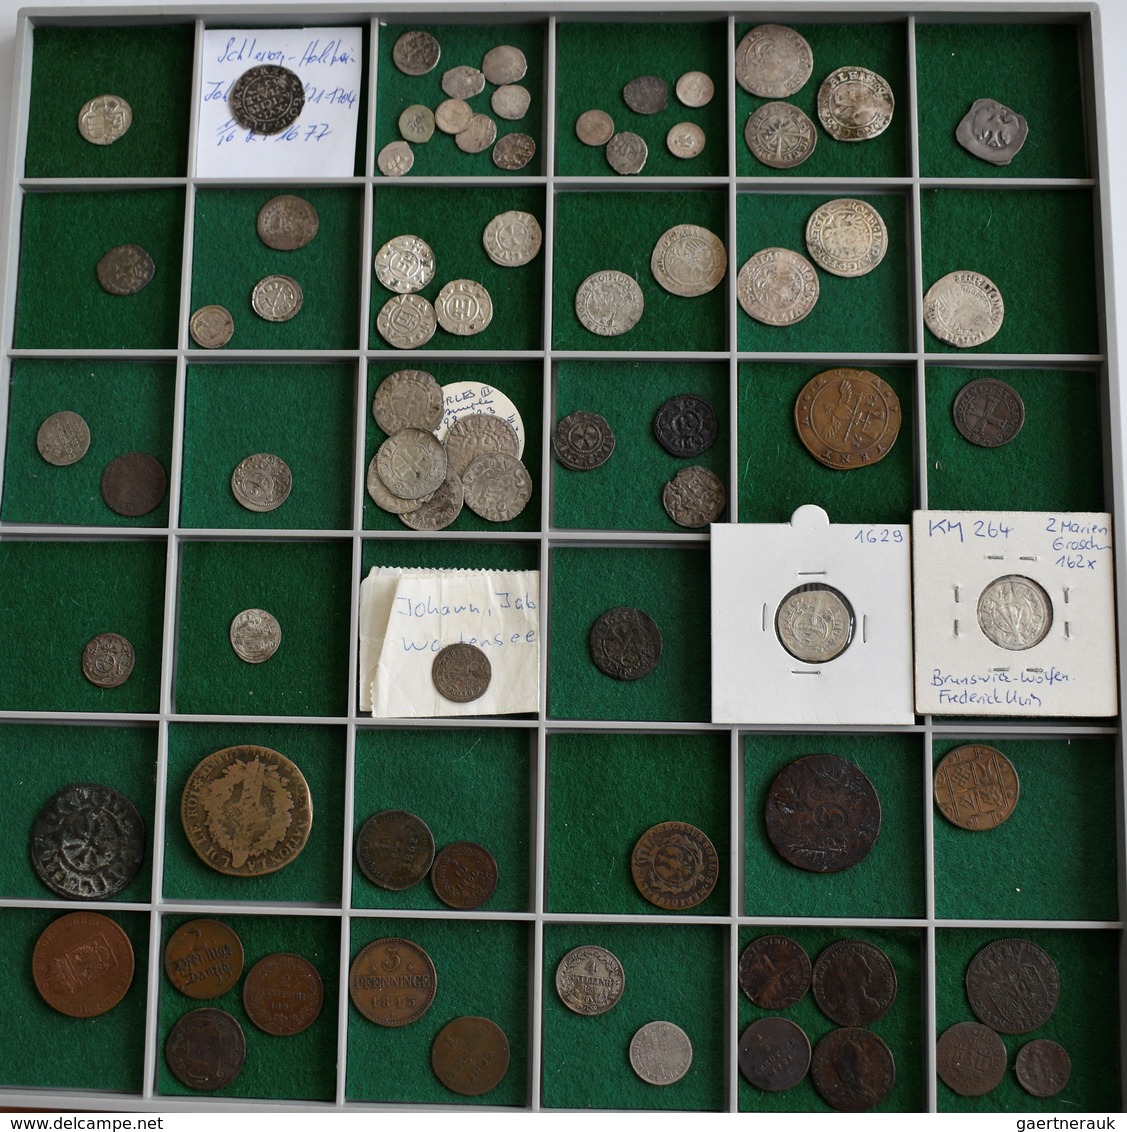 Europa: Konvolut Von Ca. 210 Silber- Und Bronzemünzen Diverser Europäischer Staaten, Beginnend Ab De - Andere - Europa